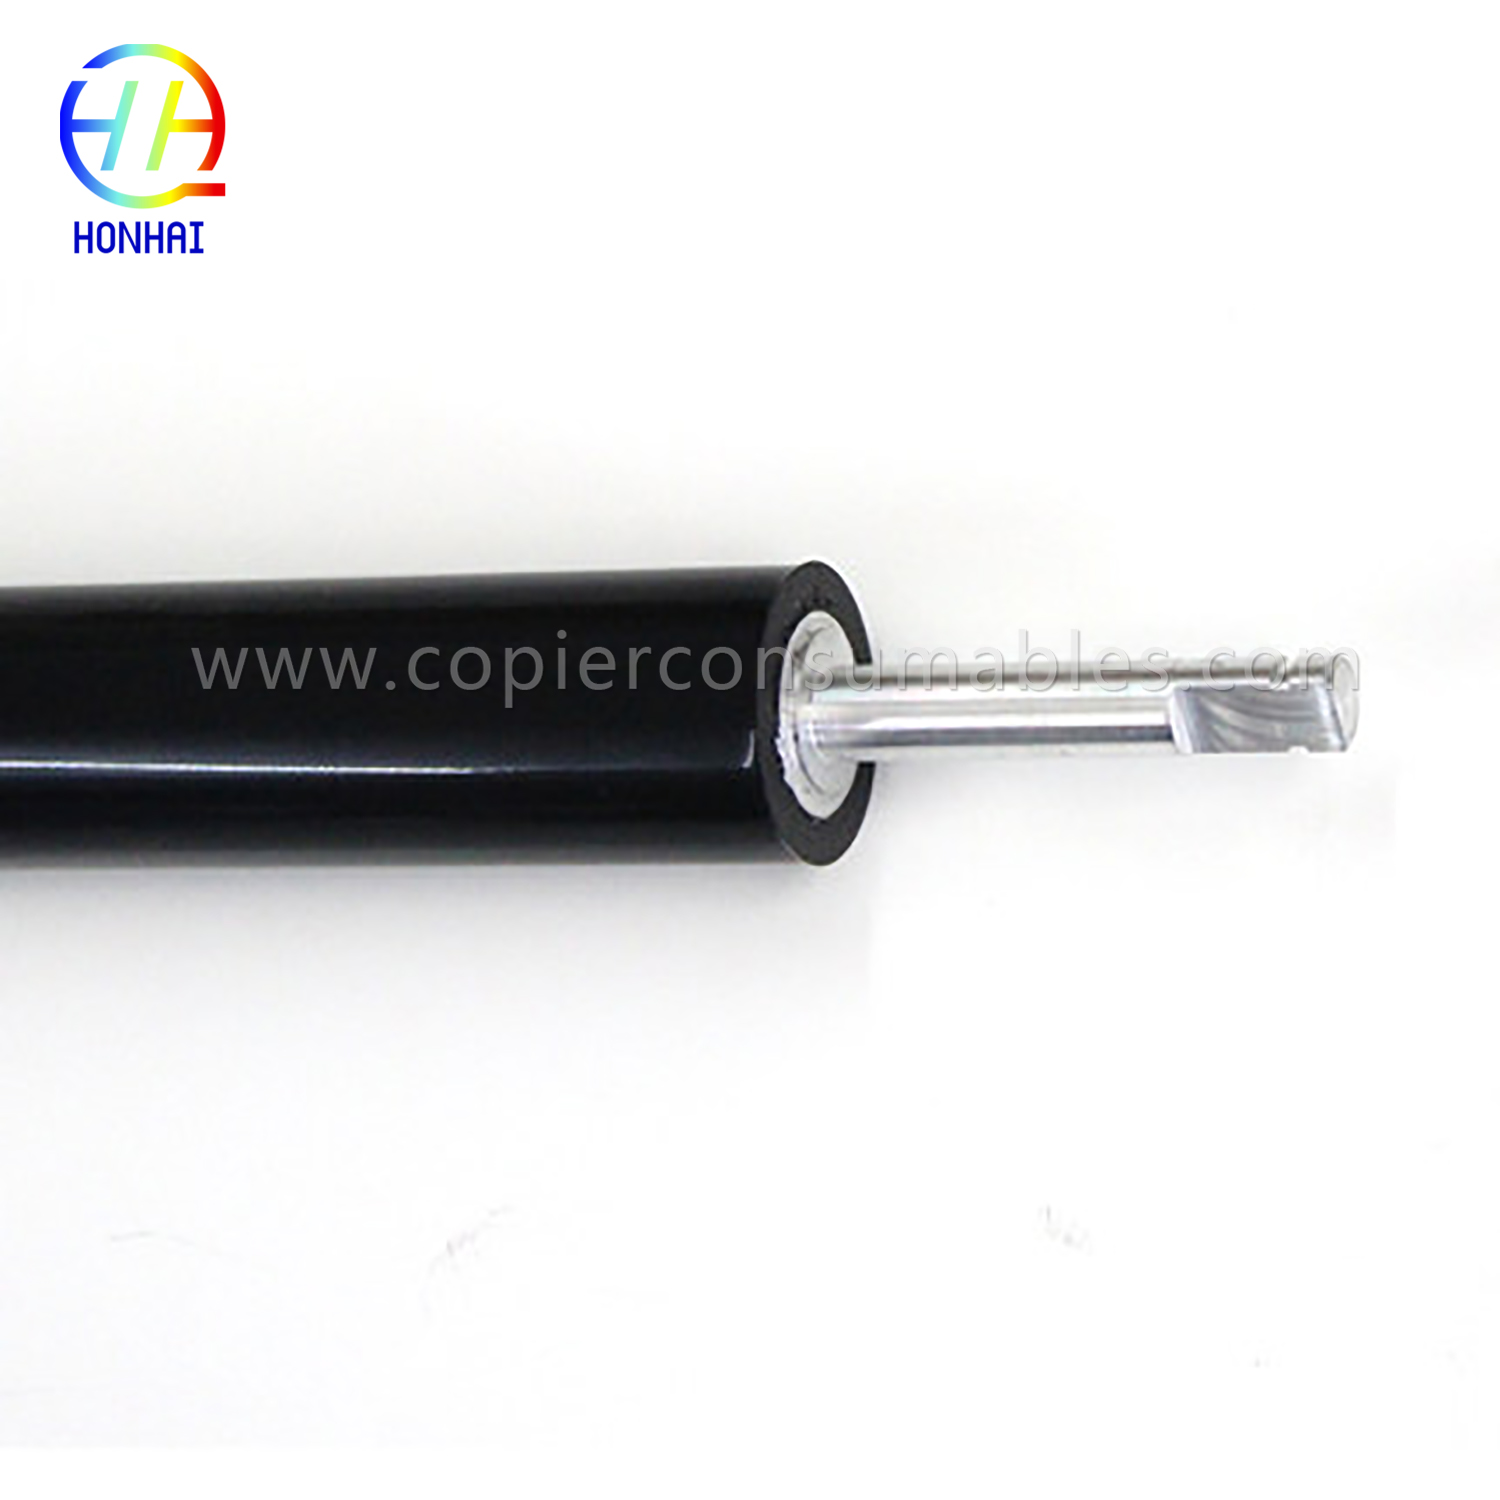 Rodillo de presión inferior para HP Color LaserJet 4700 4730 CM4730 CP4005 (LPR-4700) (3) 拷贝